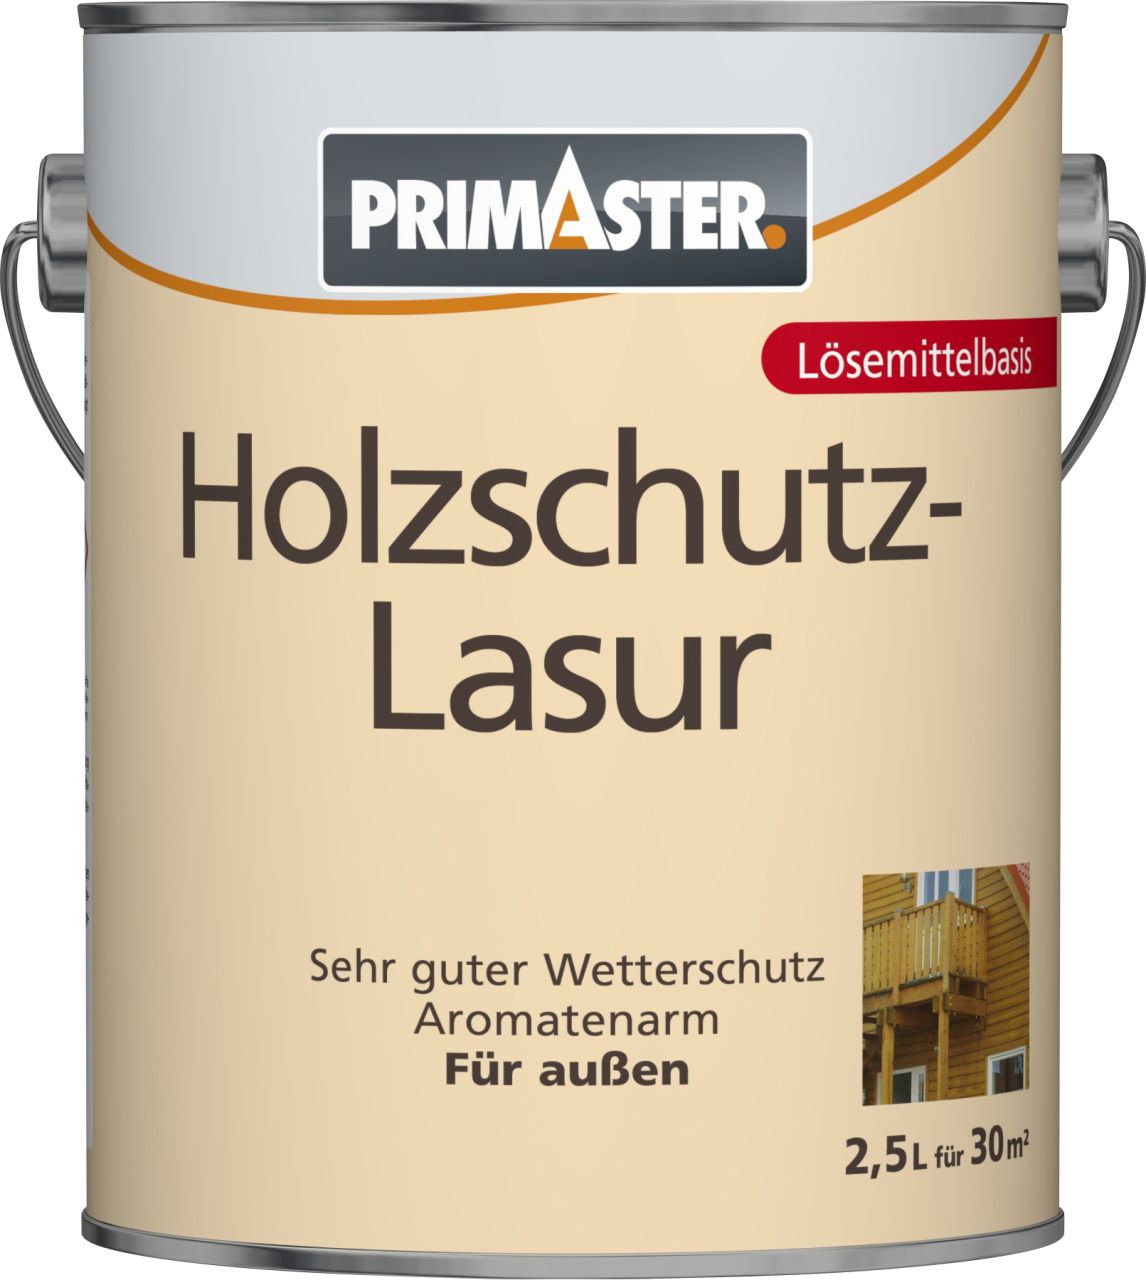 Primaster Holzschutzlasur 2,5 L farblos von Primaster